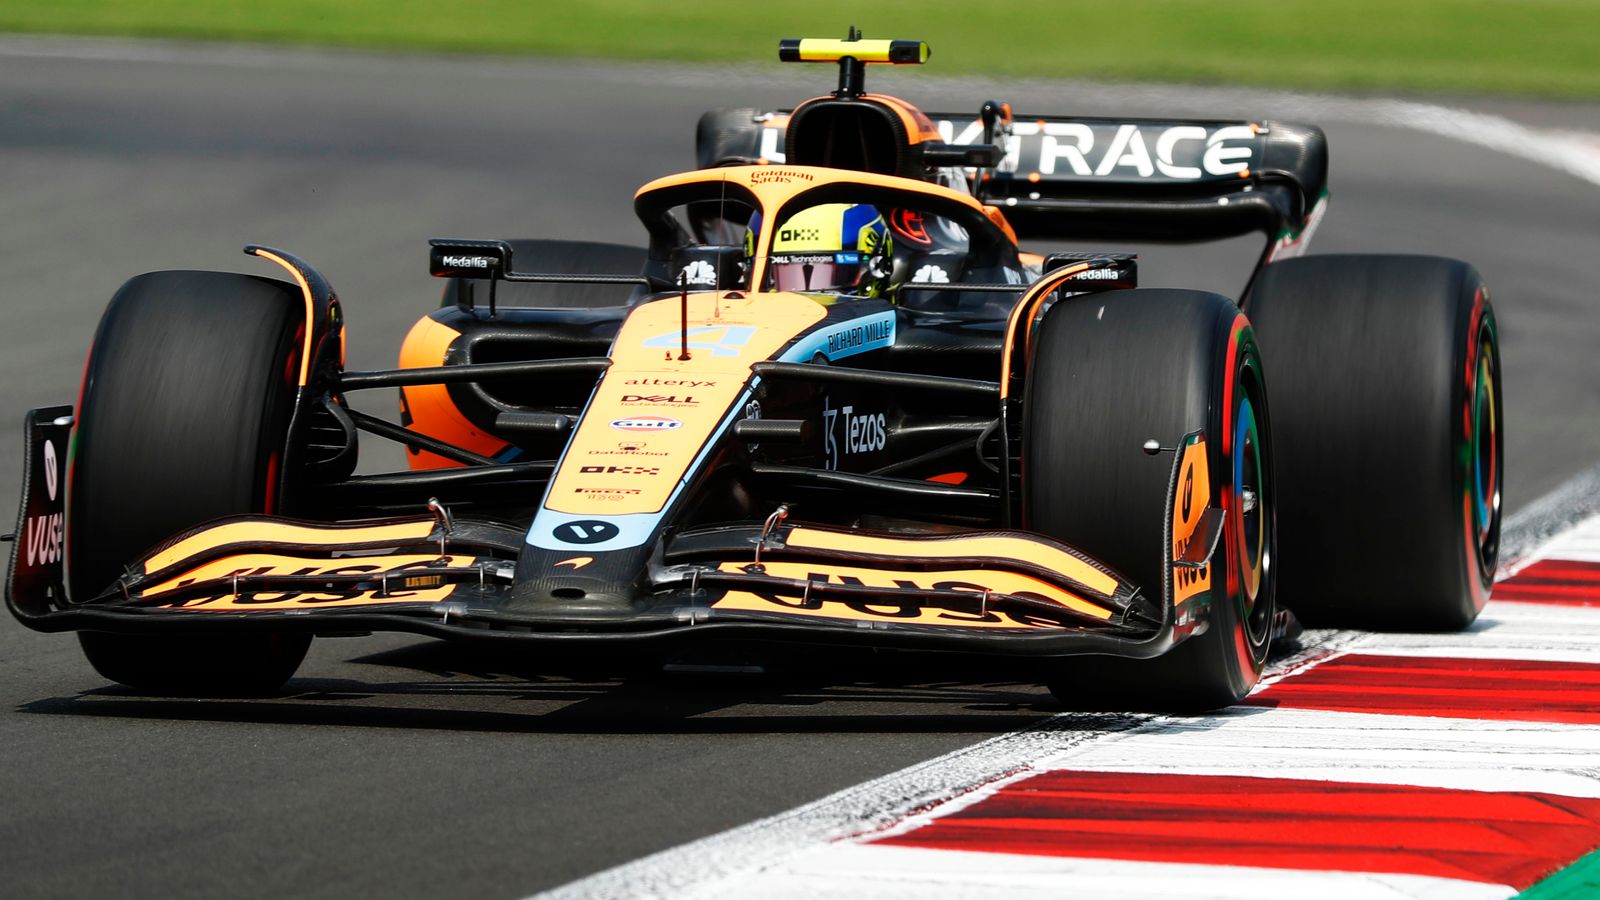 La McLaren insiste che i titoli siano ancora l’obiettivo in F1 dopo l’uscita anticipata di Andreas Seidl e afferma “non ci perderemo una vittoria”